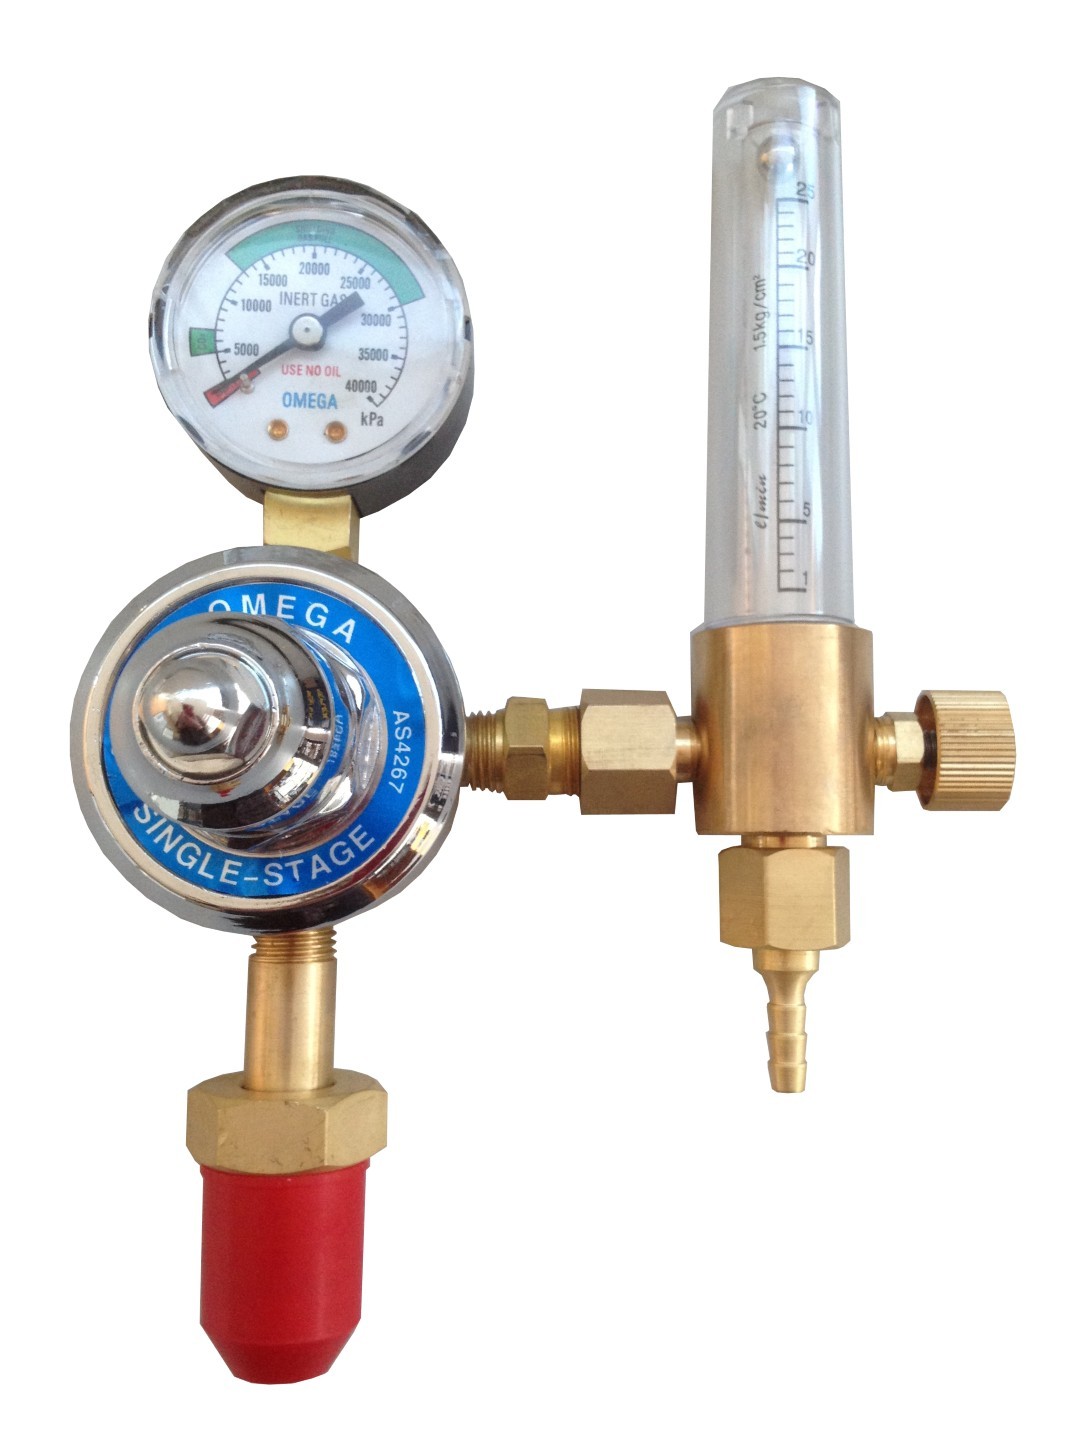 argon regulator and flow meter